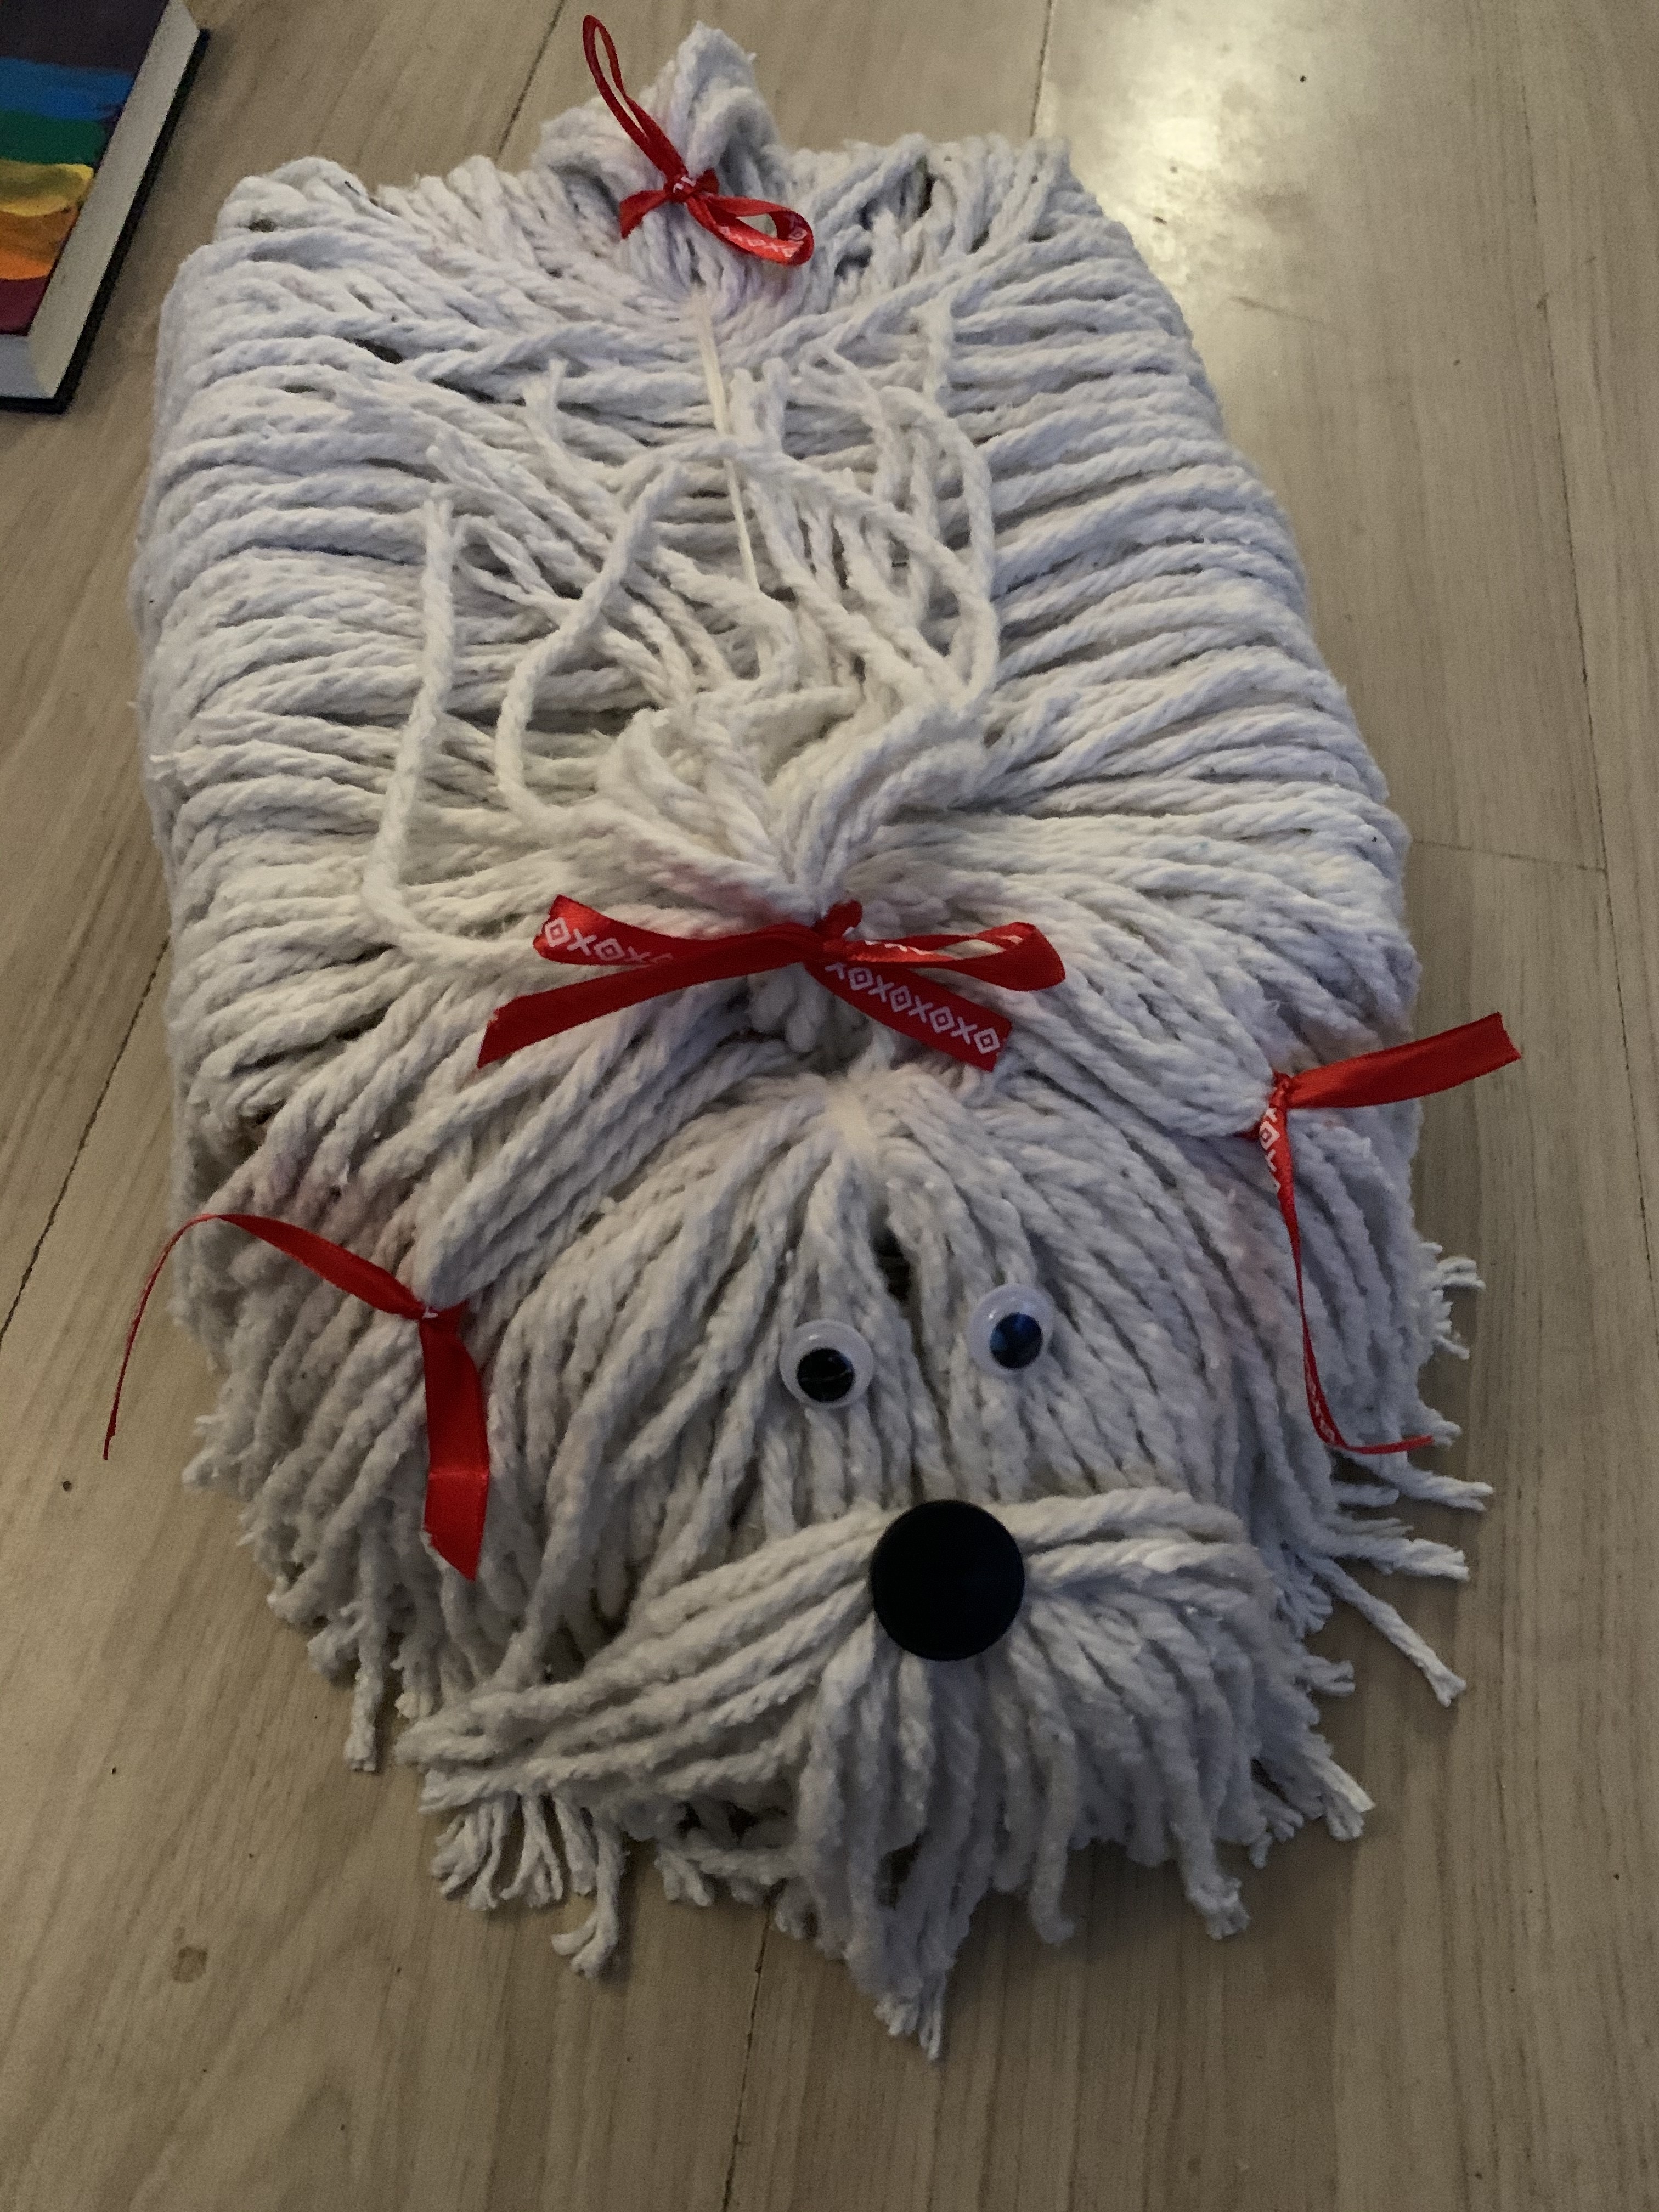 Christus geluk Zuigeling Sinterklaas surprise : mop(s)hond